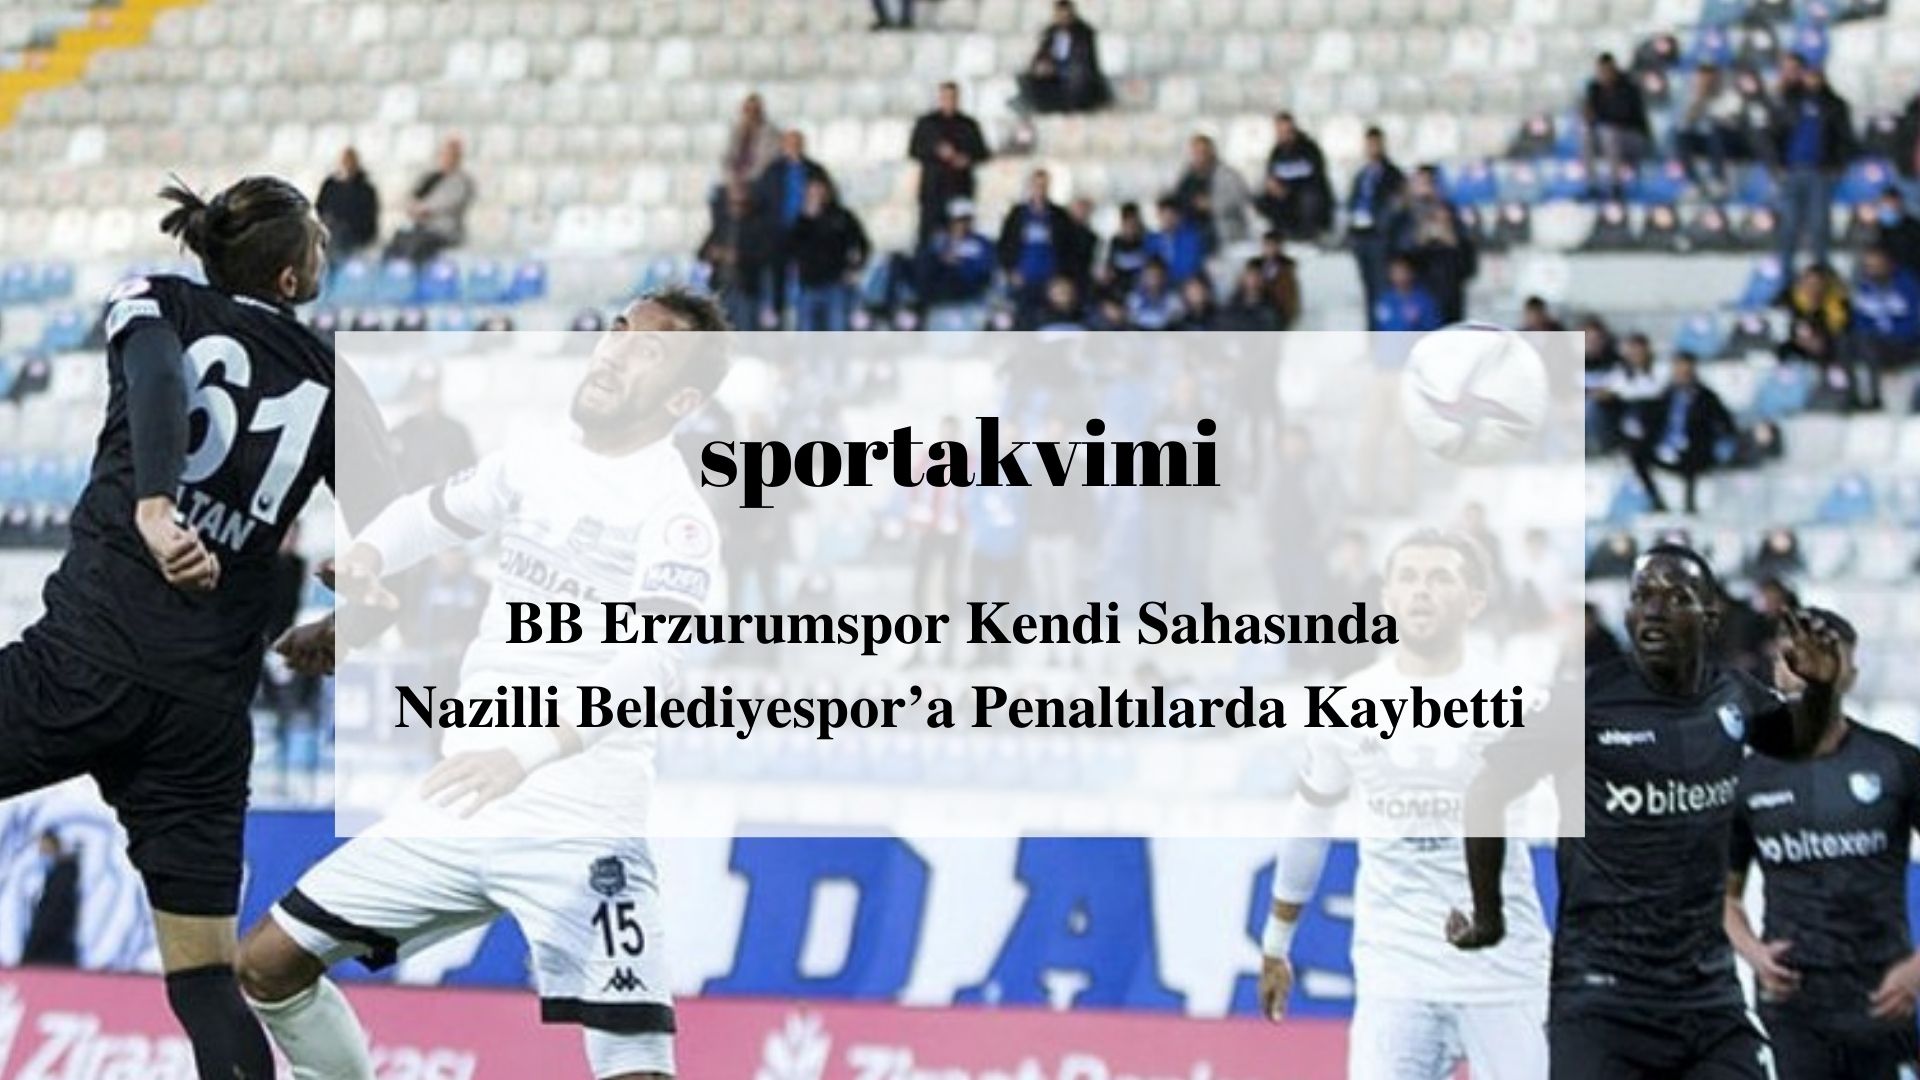 BB Erzurumspor Kendi Sahasında Nazilli Belediyespor’a Penaltılarda Kaybetti